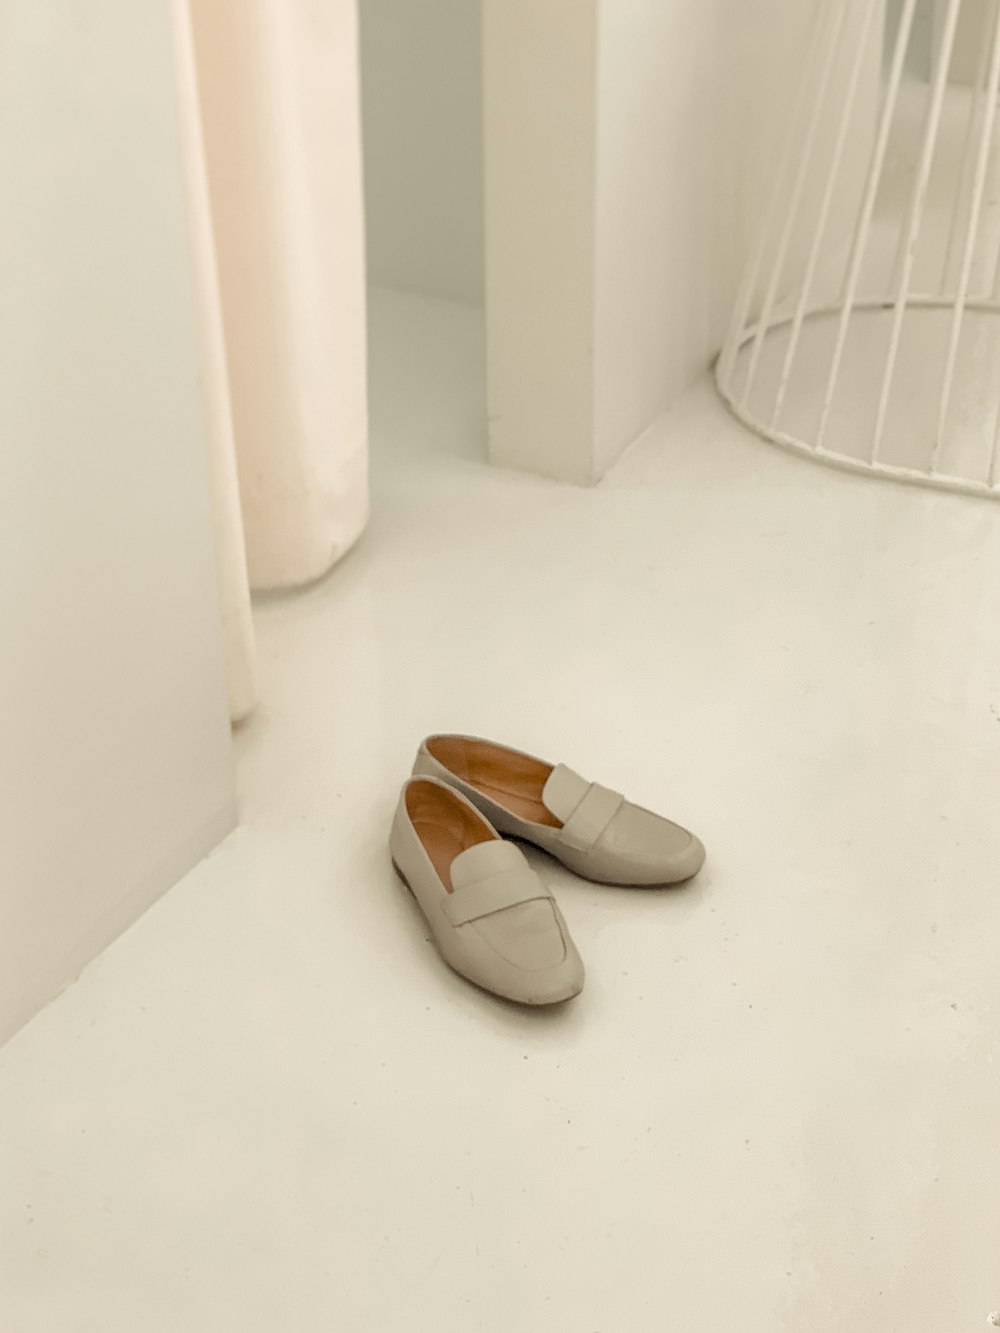 sapatos cinzentos em um quartoclose-up fotografia